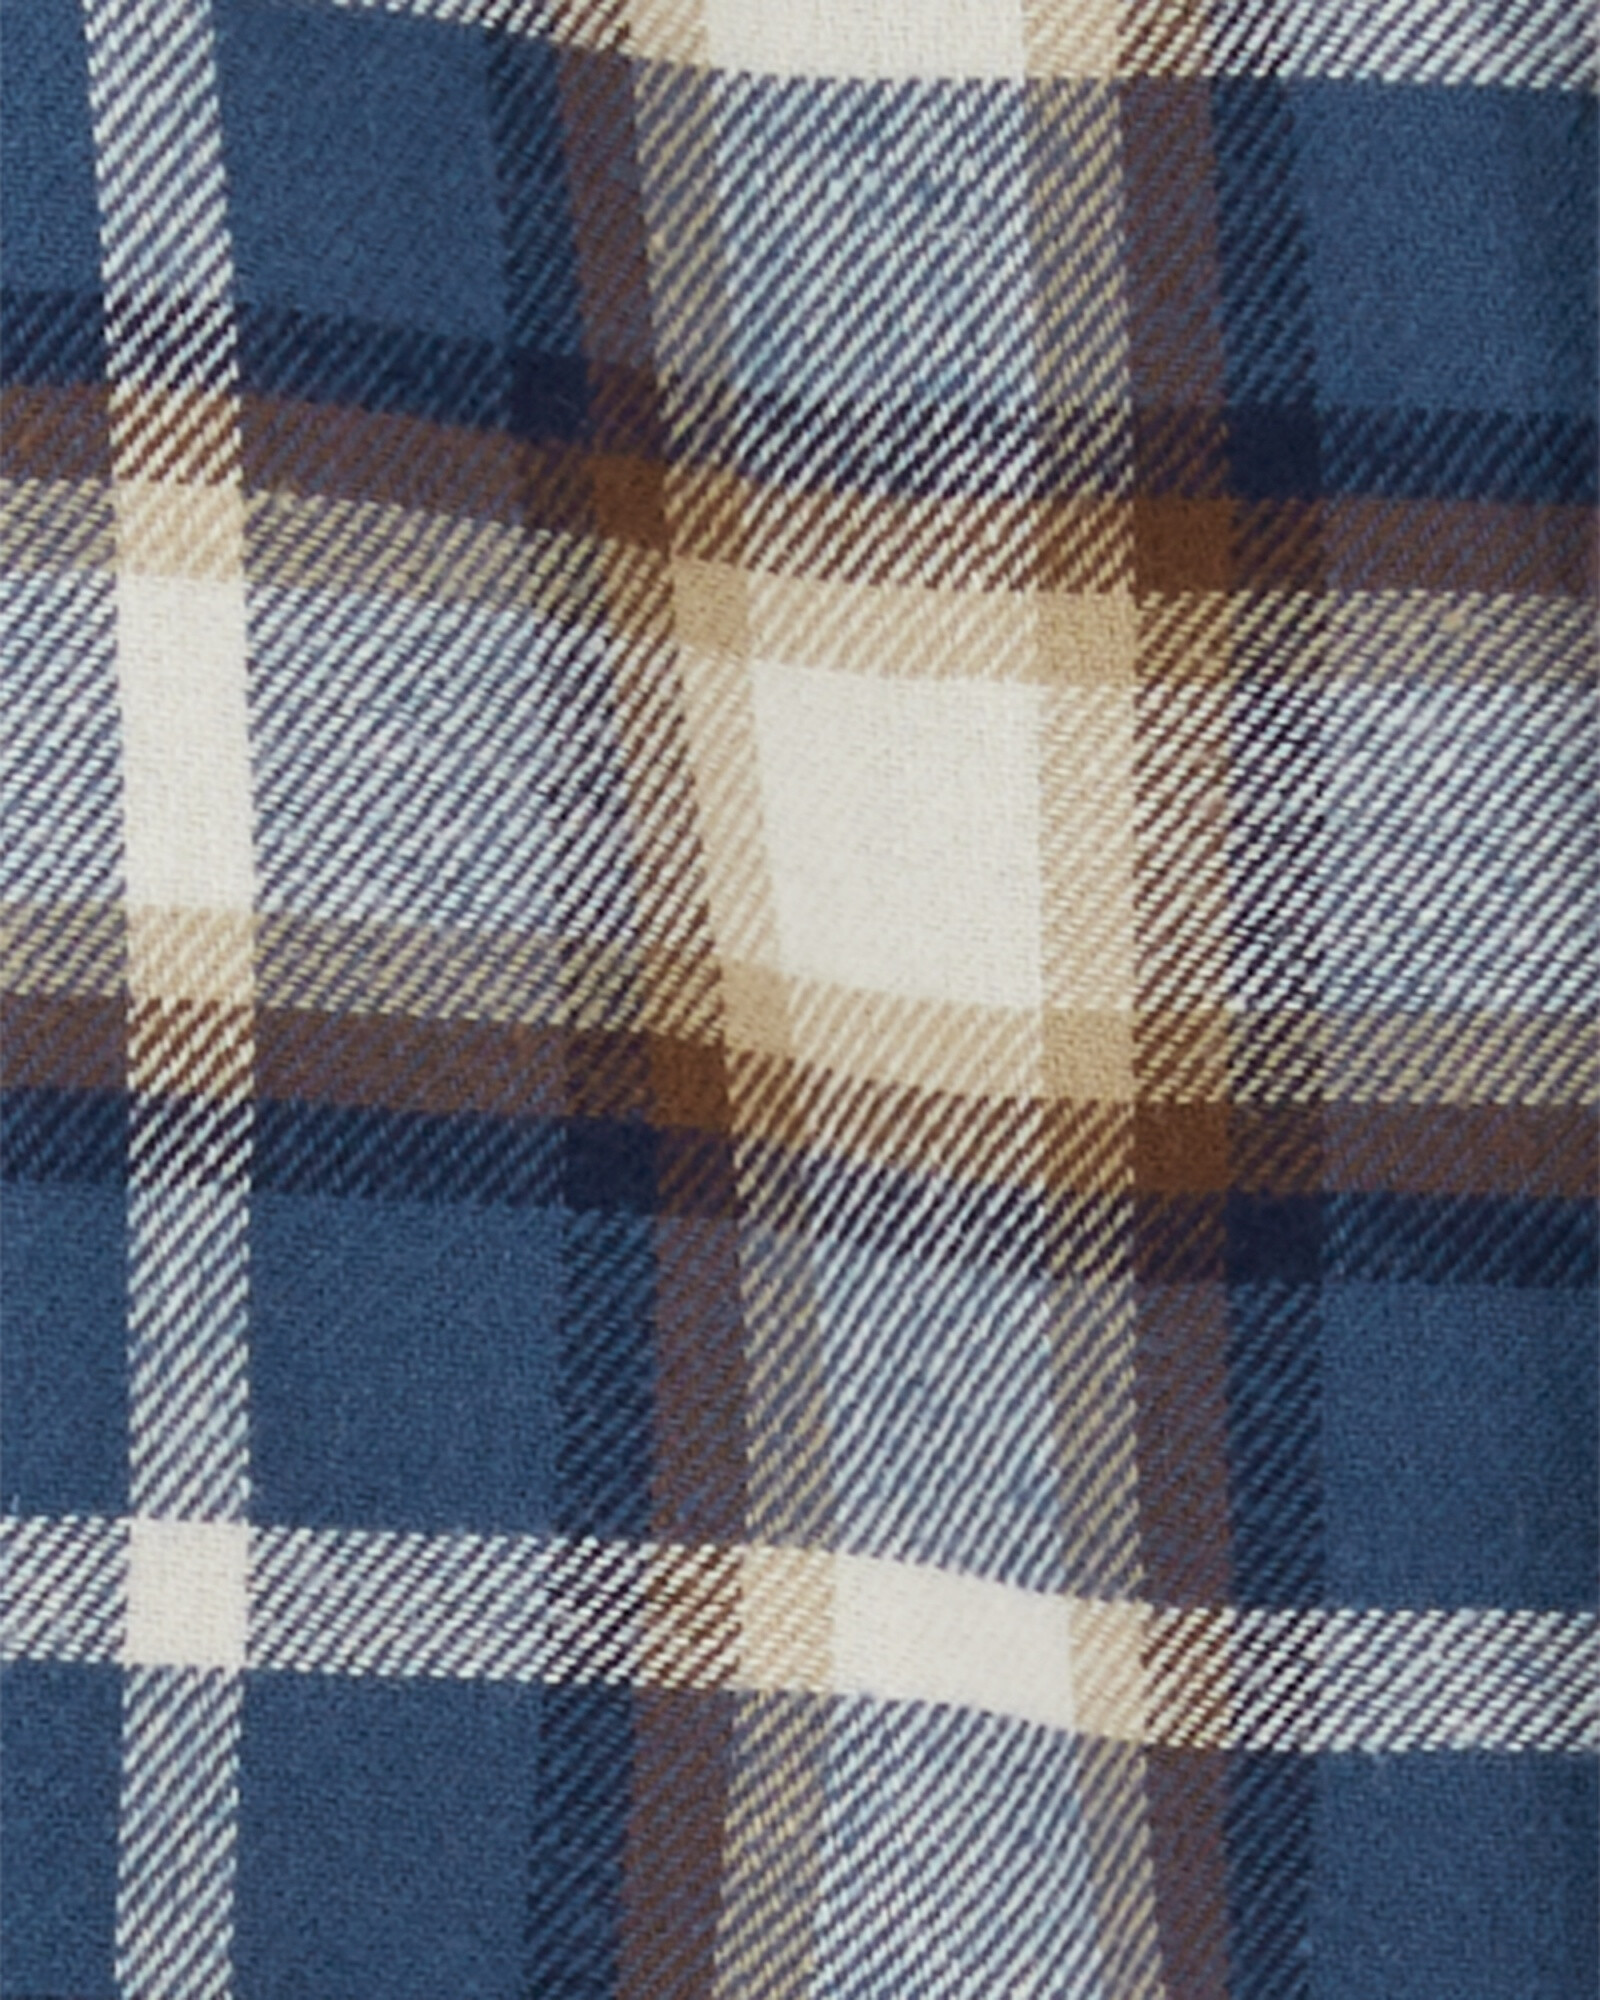 Set dos piezas pantalón de algodón y camisa de franela diseño a cuadros Sin color